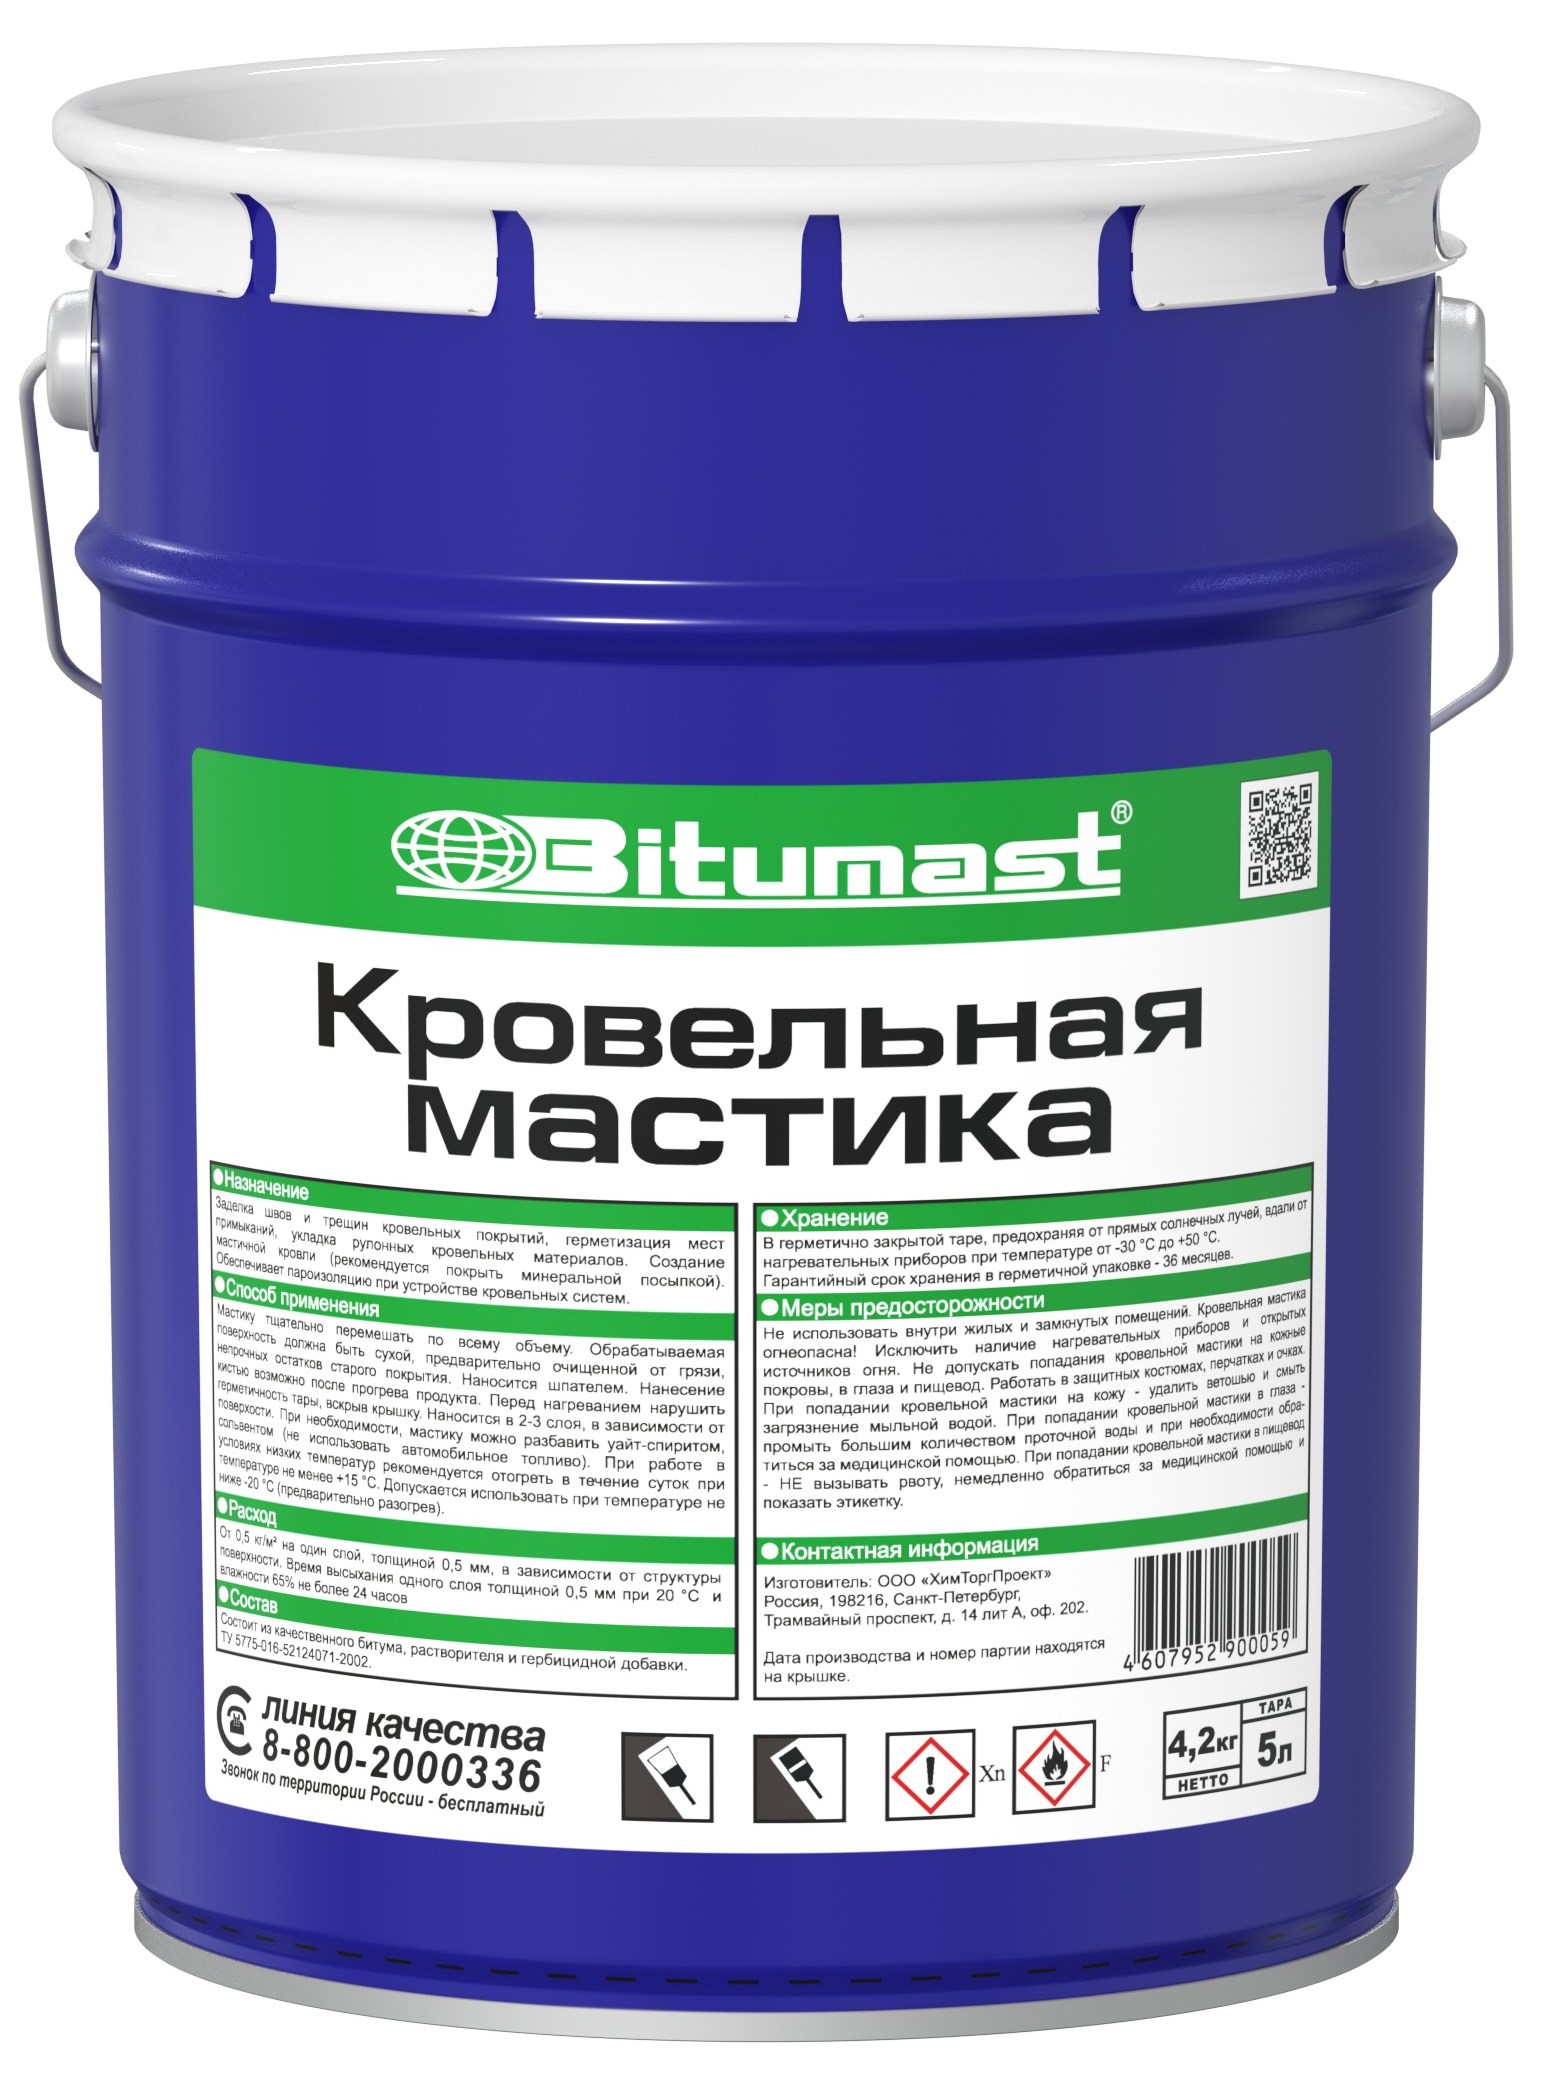 Bitumast – купить в Санкт-Петербурге, низкие цены в интернет 